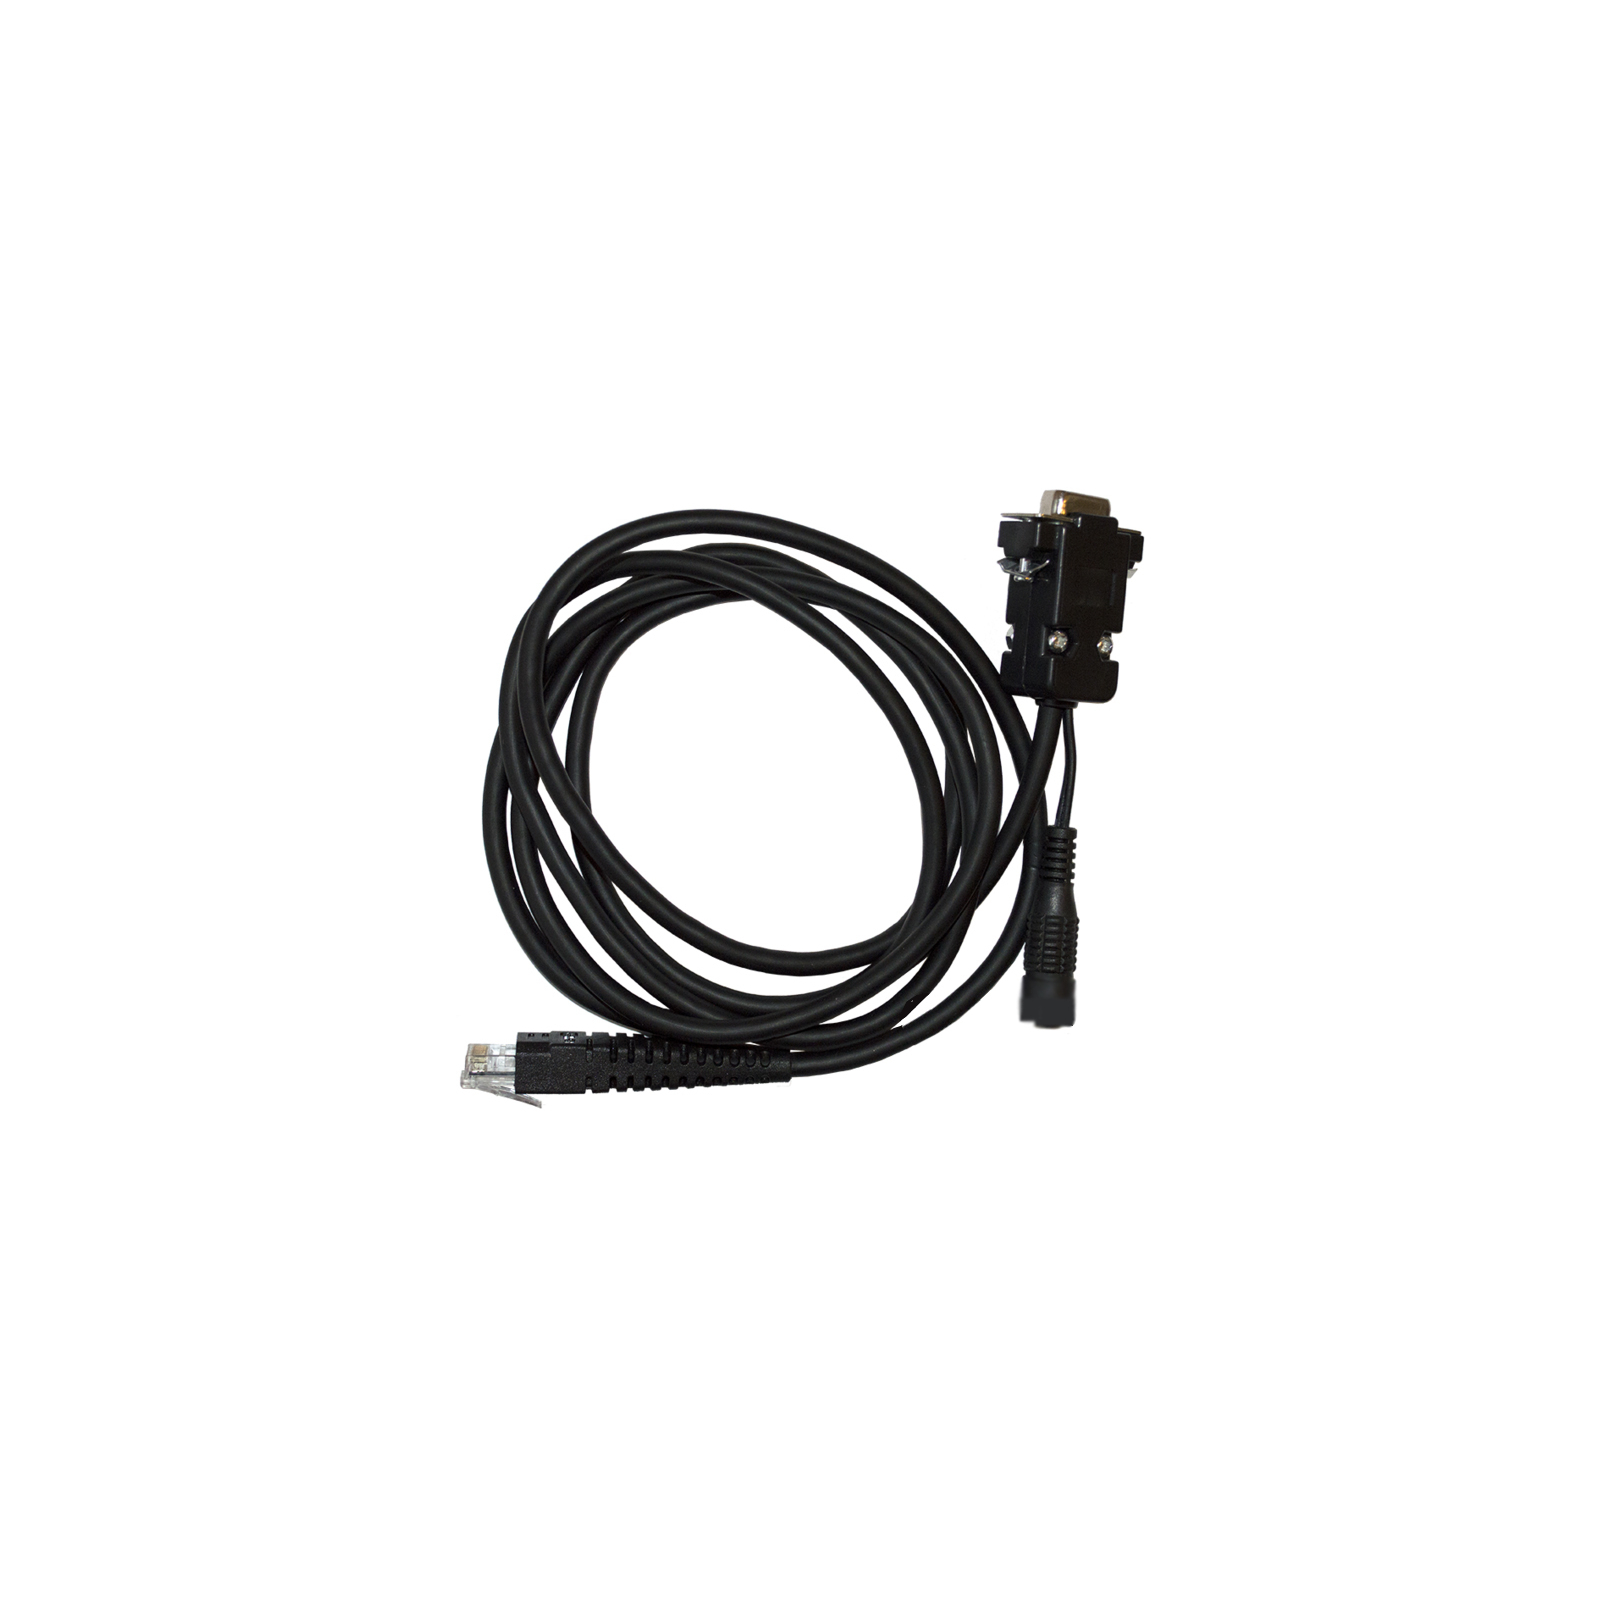 Интерфейсный кабель Cino кабель RS232 1.8m (6494)